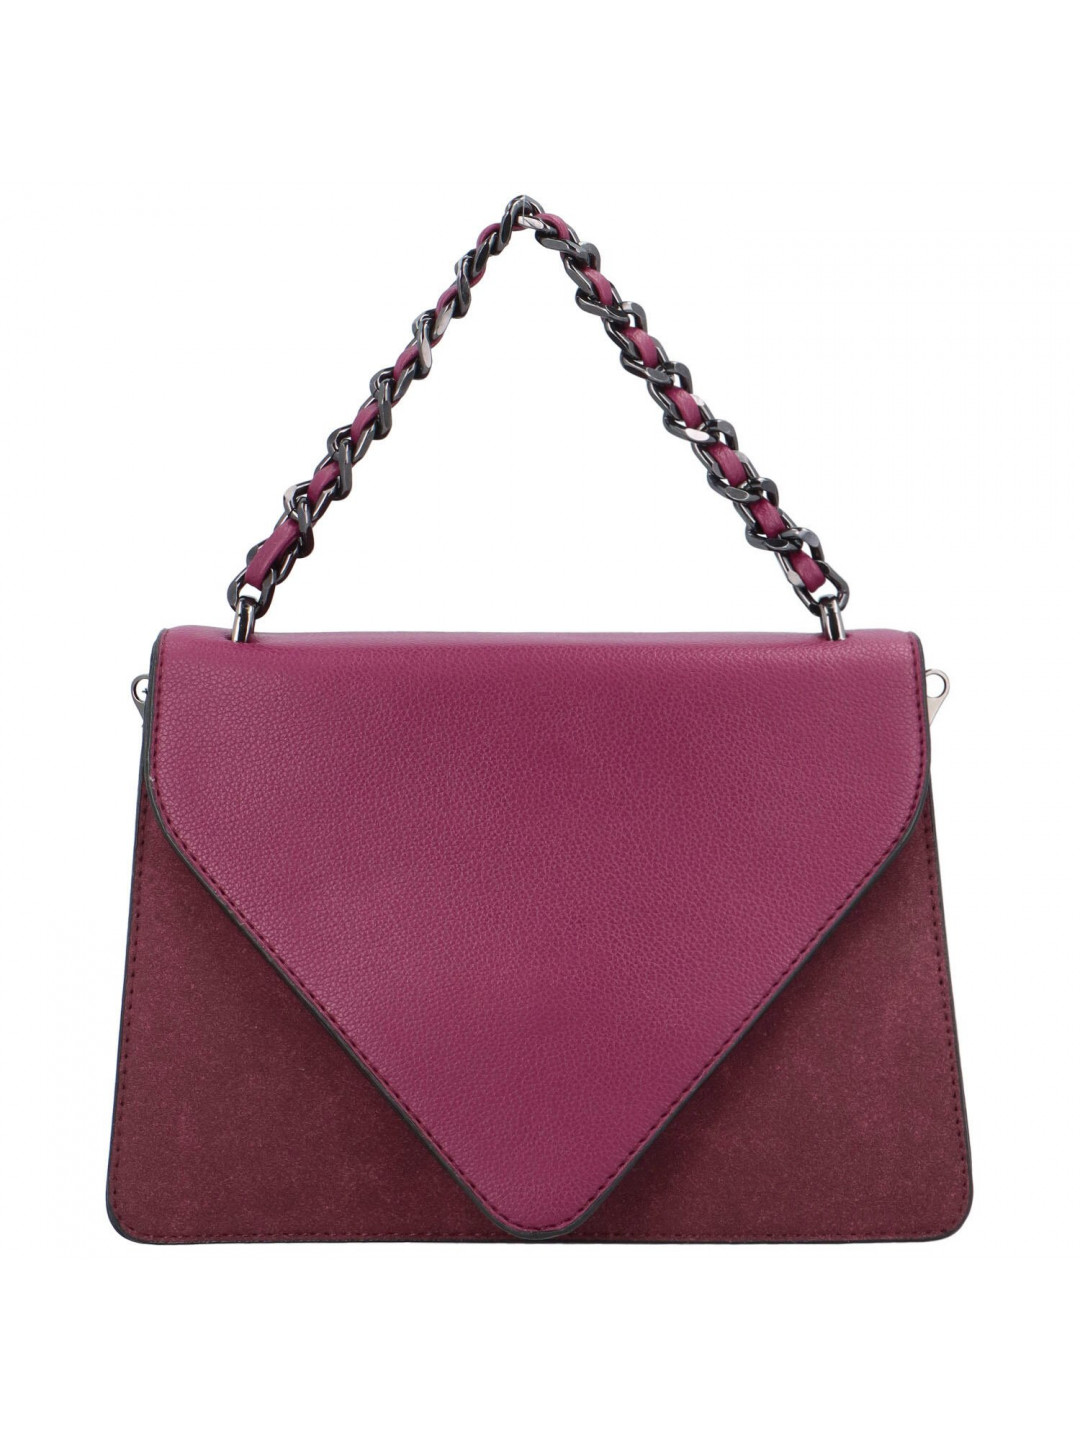 Dámská kabelka do ruky fialově červená – Maria C Mikaela fialová